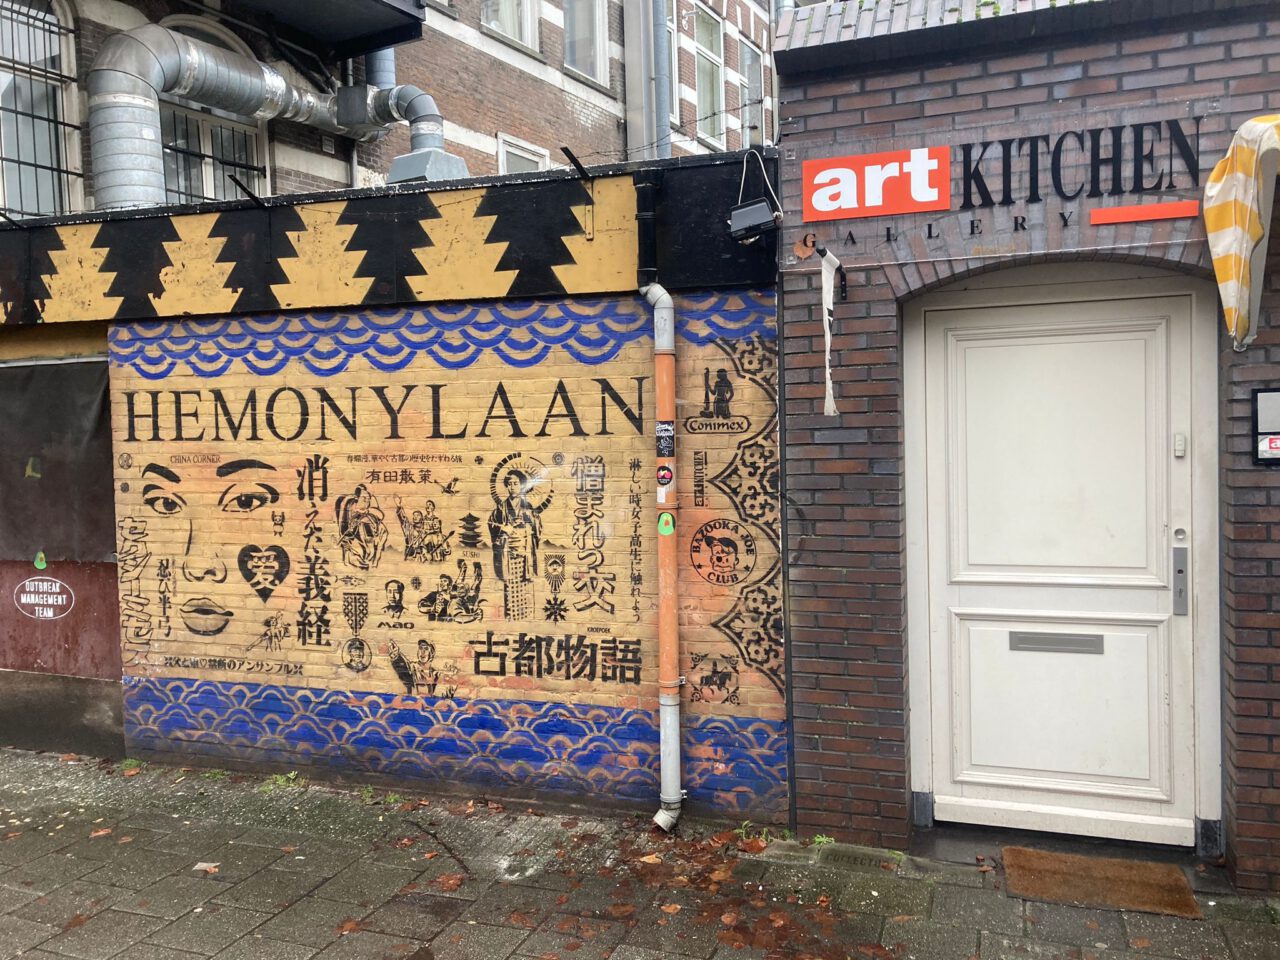 Street art is te vinden op Hemonystraat 4 in de Pijp - tijdens de privé rondleiding te zien.